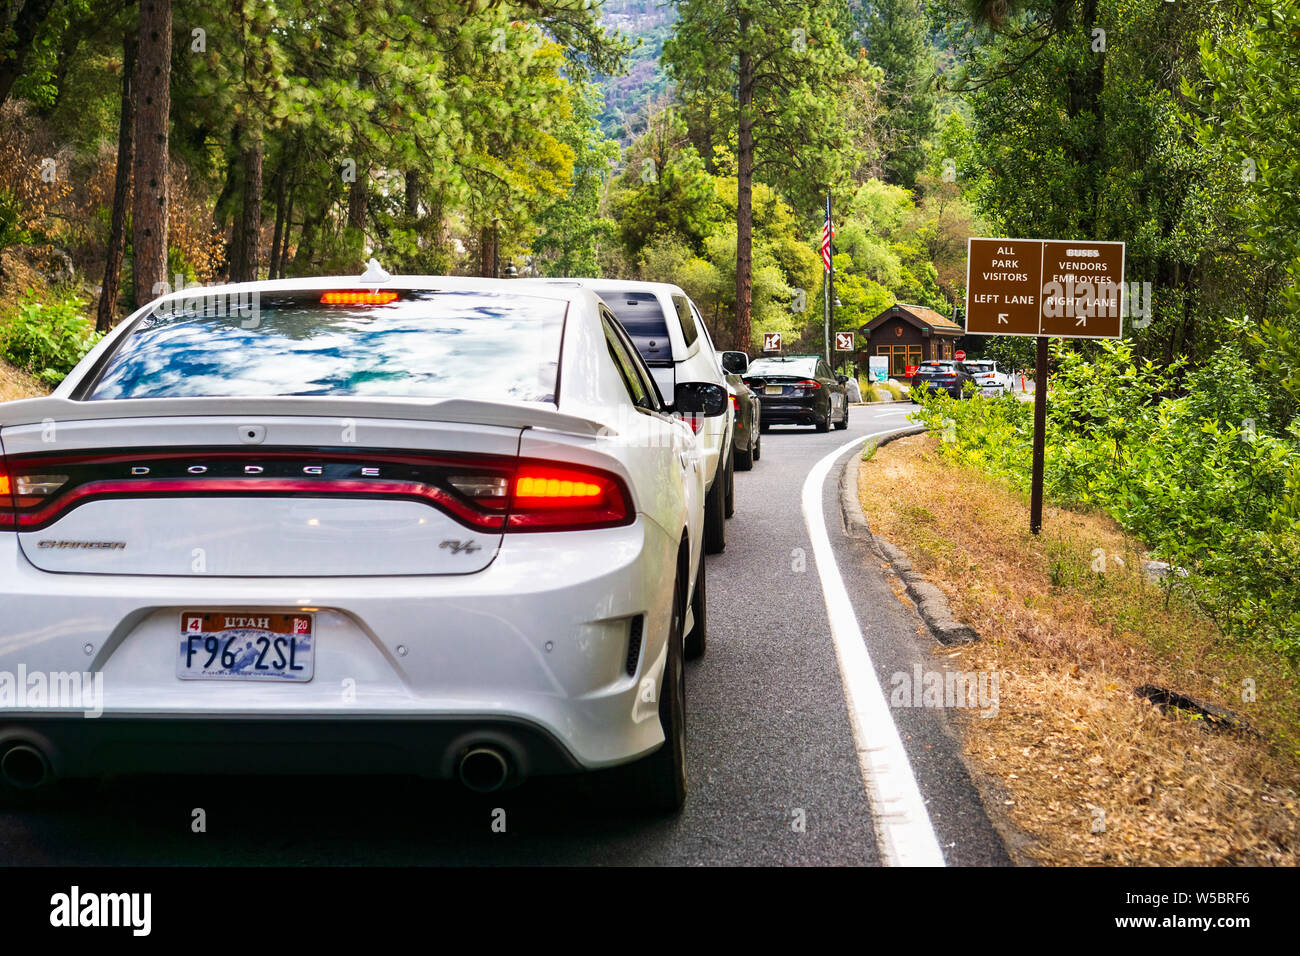 Giugno 28, 2019 il Parco Nazionale di Yosemite / CA / STATI UNITI D'AMERICA - occupato la stazione di entrata al Parco Nazionale di Yosemite, con vetture in attesa in linea per ottenere un permesso Foto Stock